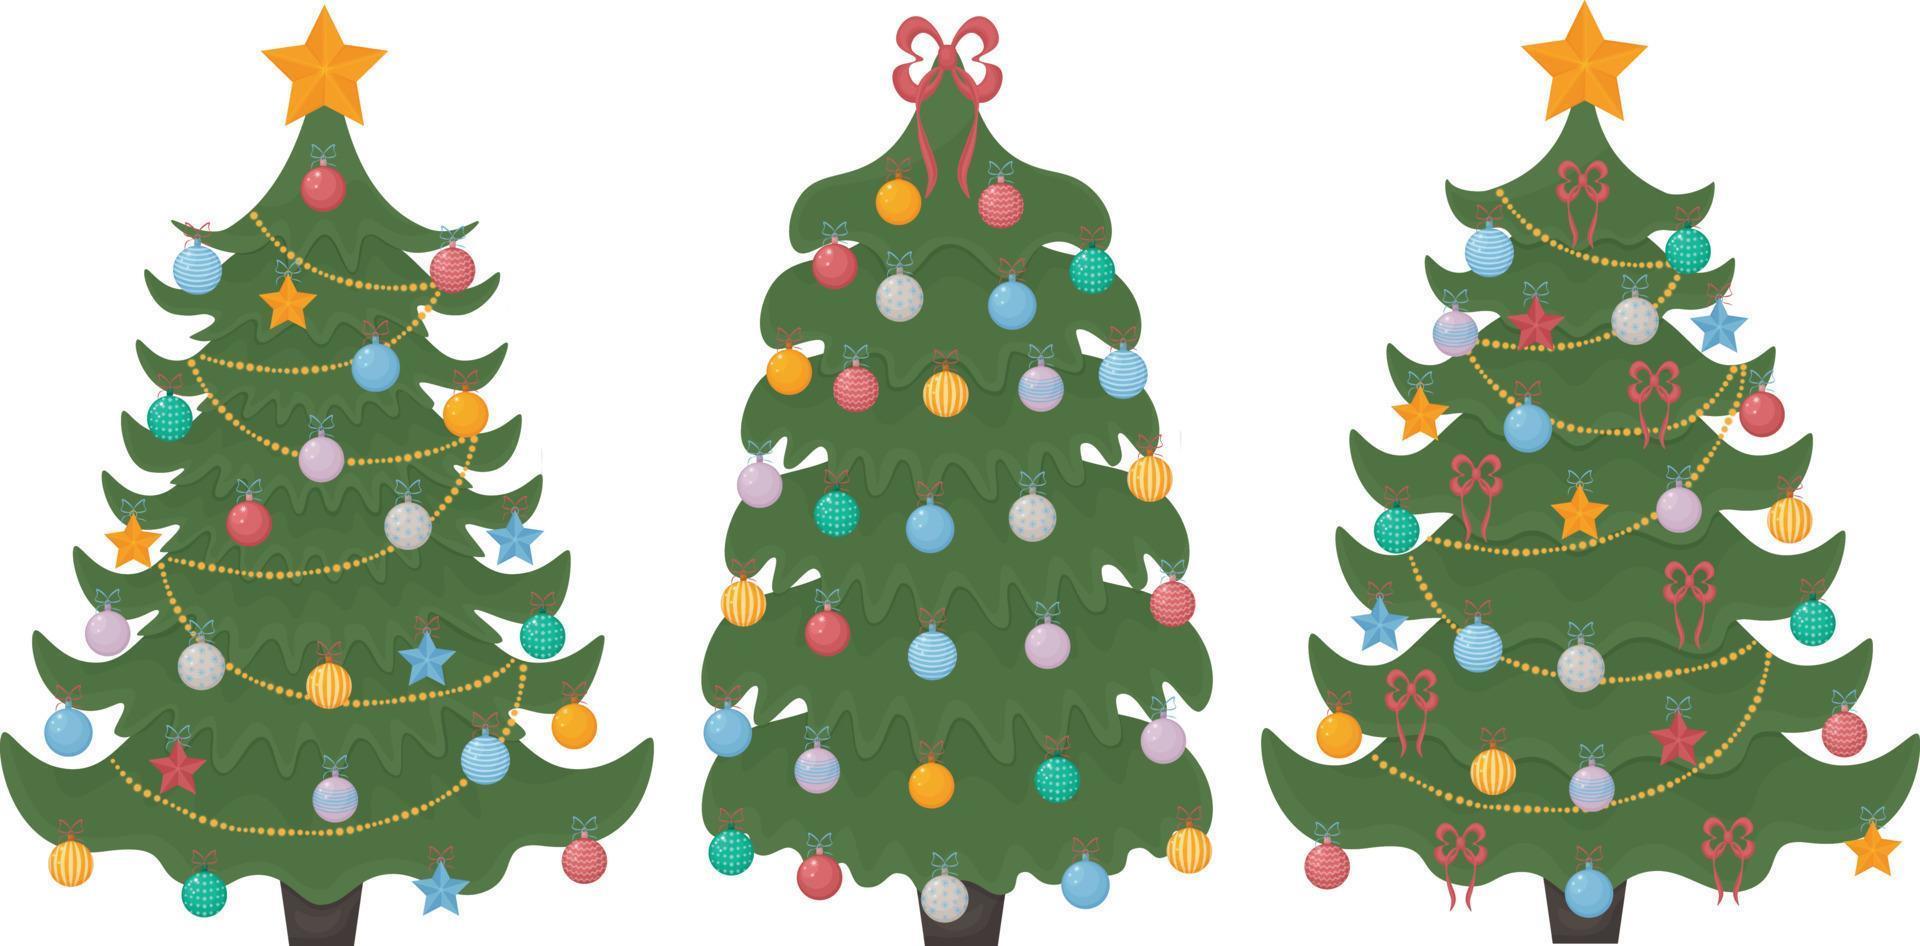 Weihnachtsbäume. ein Satz von drei Weihnachtsbäumen, die mit festlichem Spielzeug, Girlanden und einem goldenen Stern auf der Spitze sowie Schleifen geschmückt sind. vektorillustration einer weihnachtskiefer lokalisiert vektor